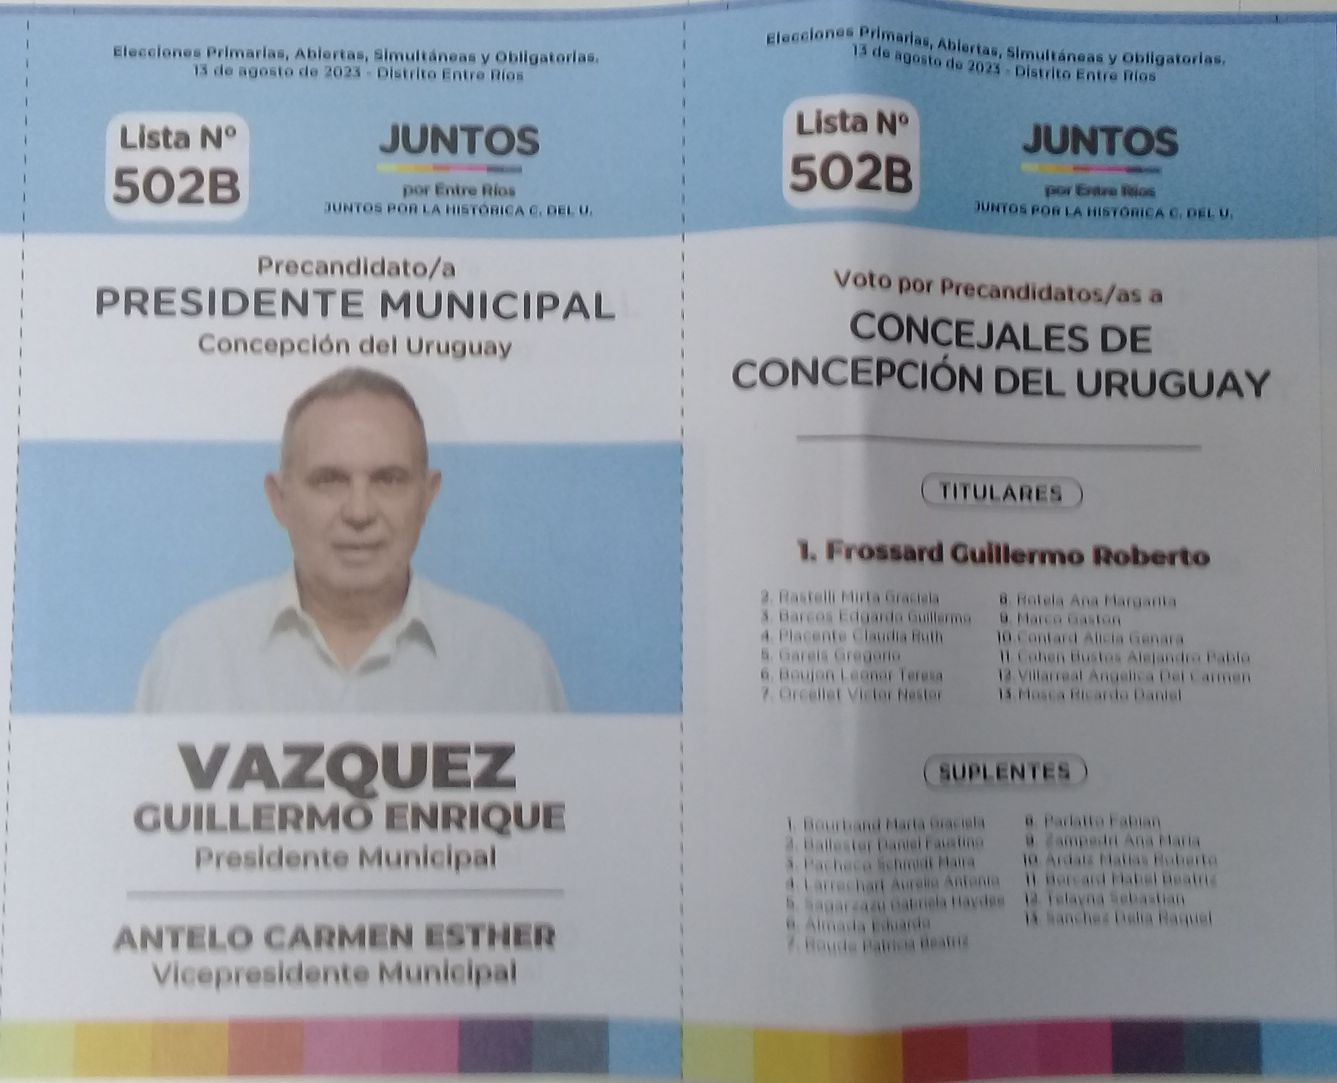 Lista 502B: Juntos por Entre Ríos - Guillermo Enrique Vázquez.